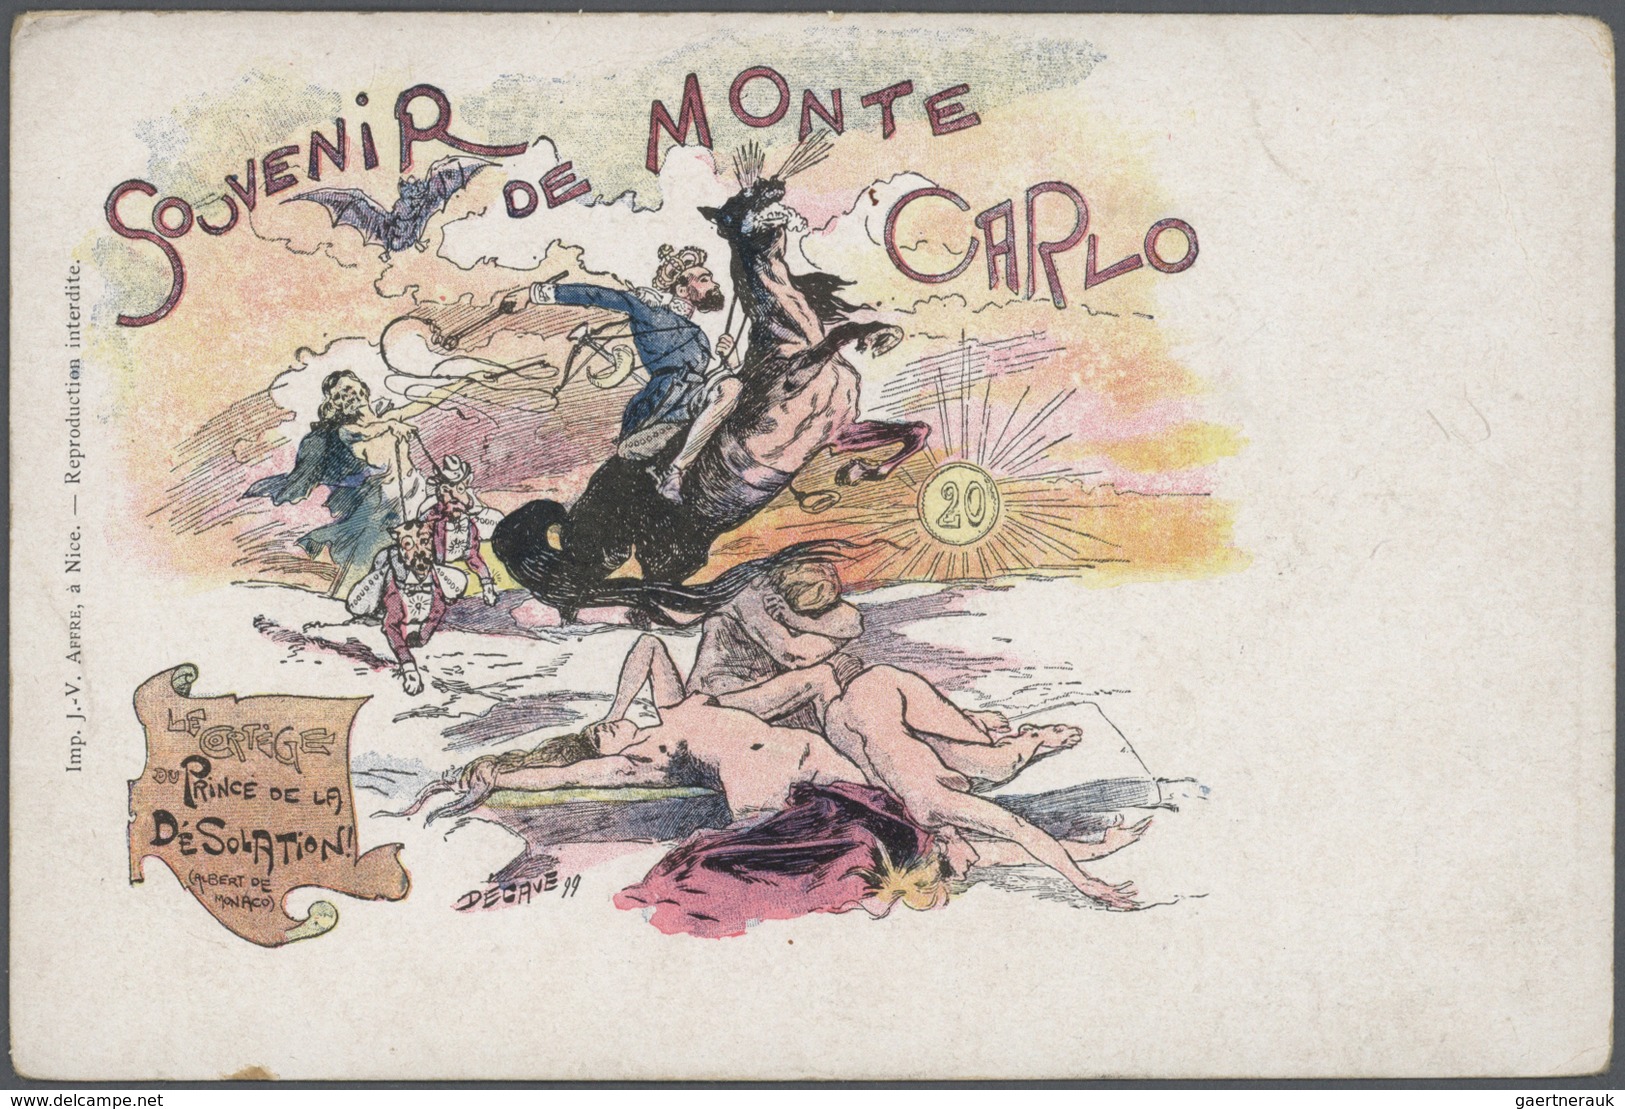 Monaco - Besonderheiten: 1895/1920, Stock of around 1,700 historical picture postcards in common com